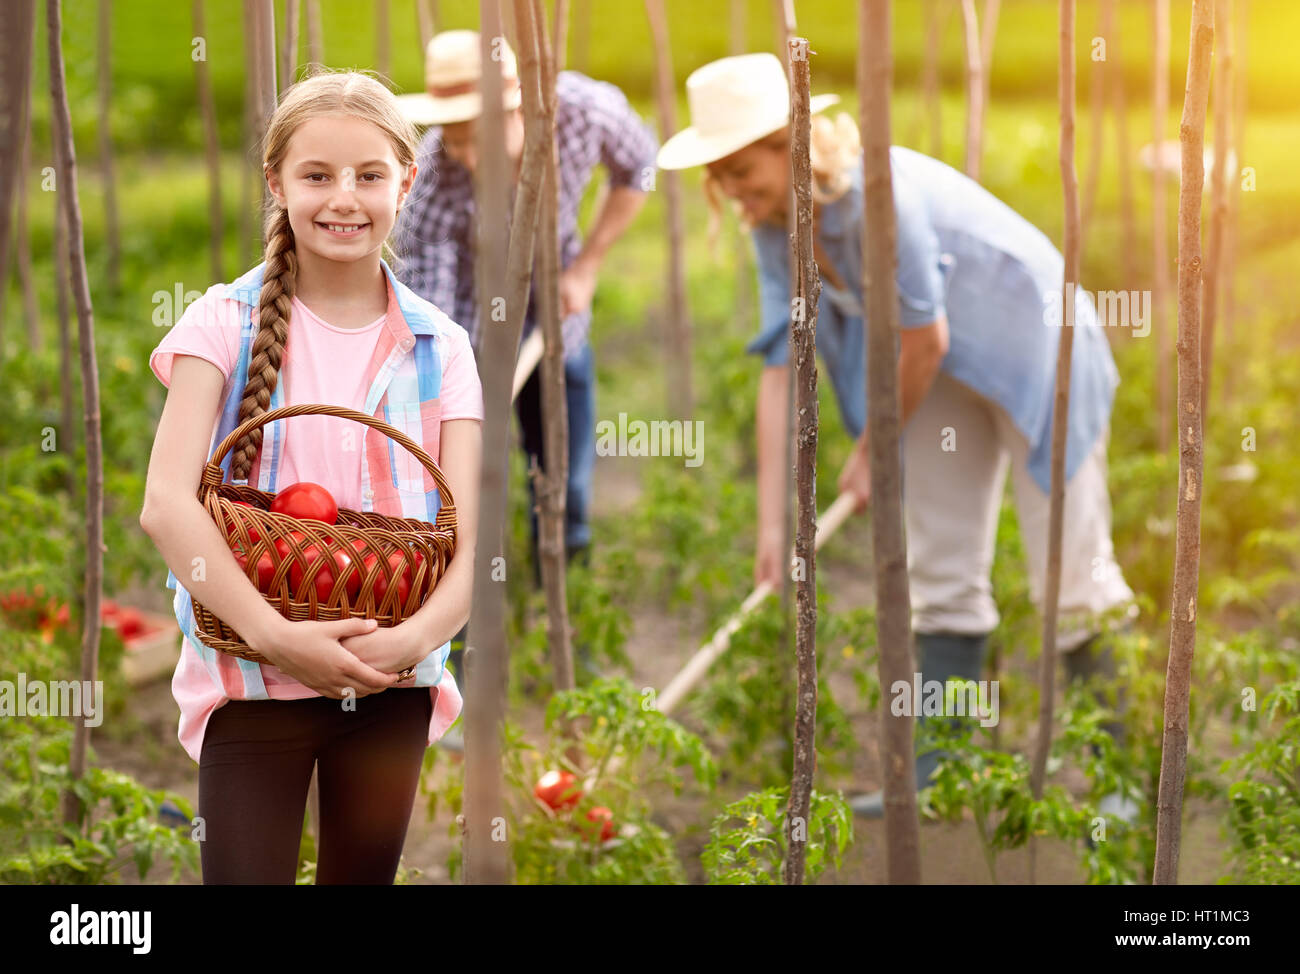 Ragazza tenere il cestello con appena raccolto i pomodori in giardino Foto Stock